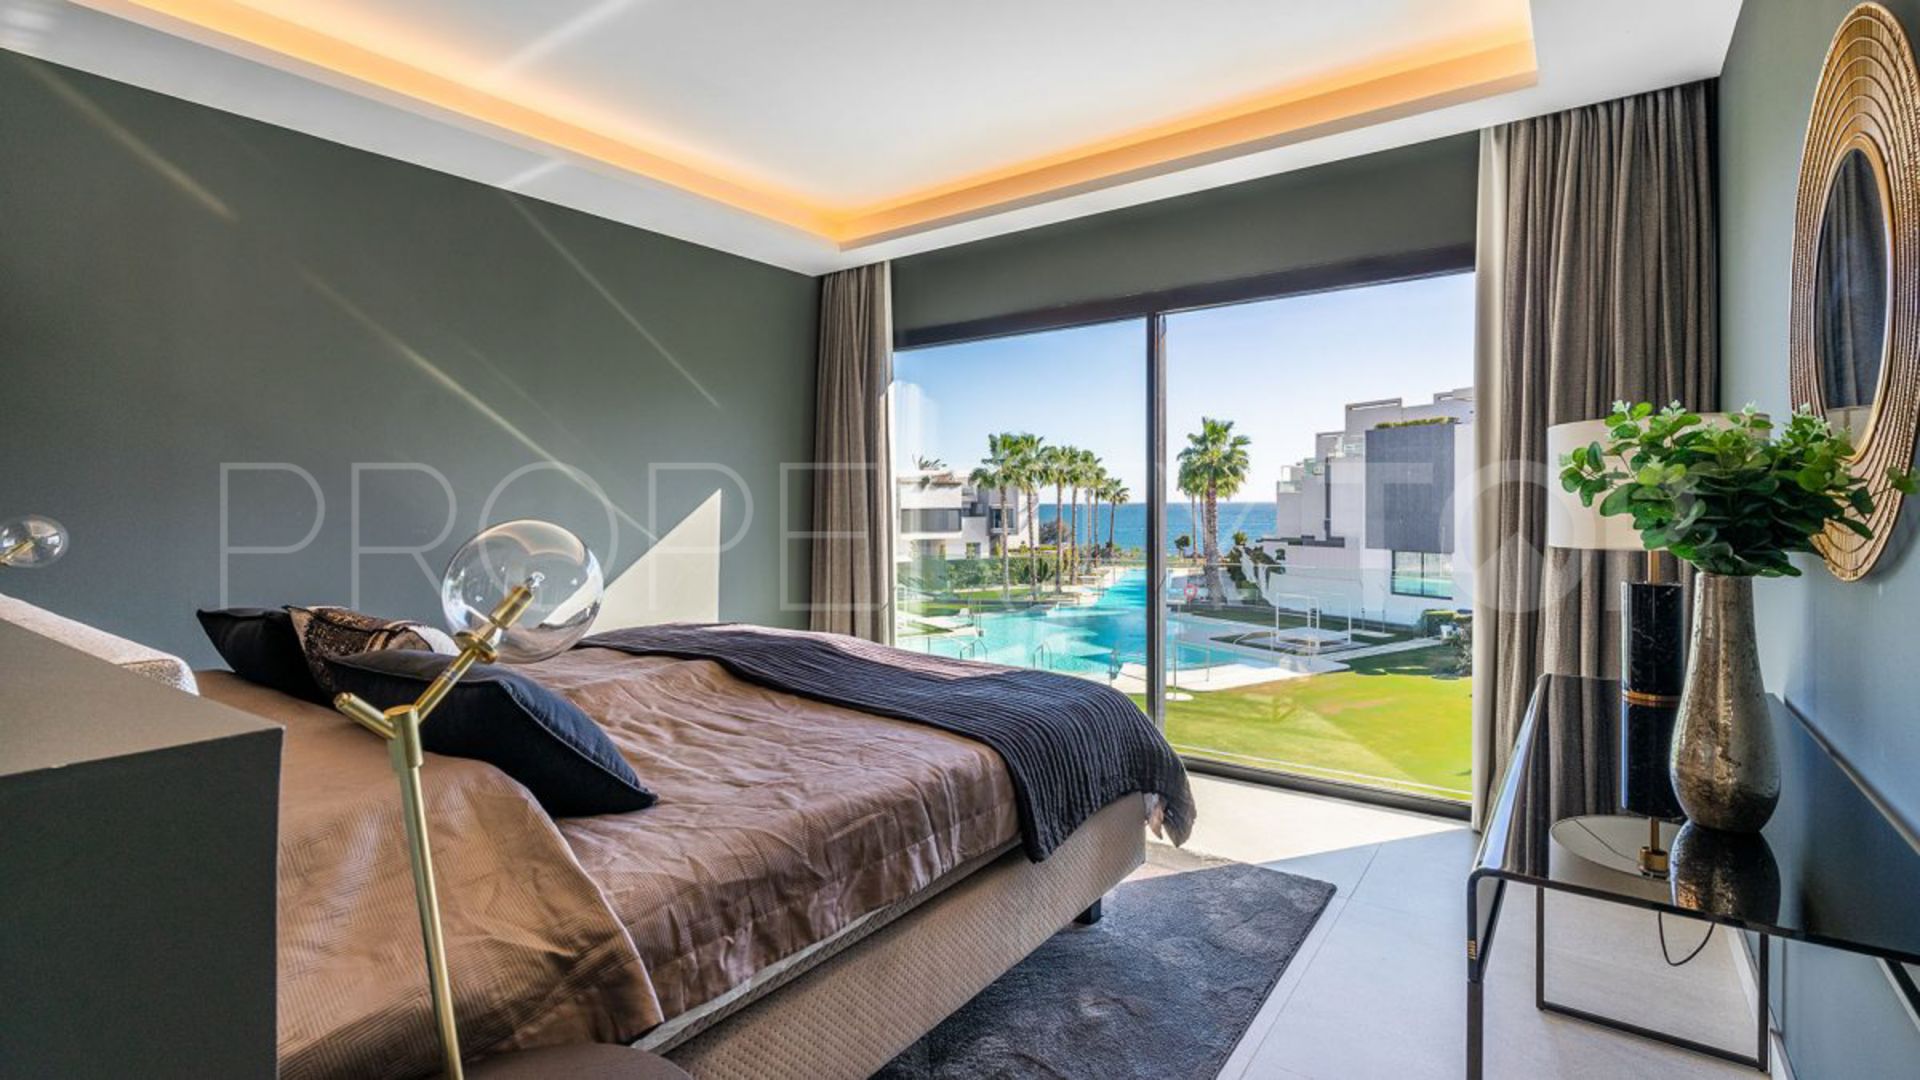 Adosado de 4 dormitorios a la venta en Guadalobon